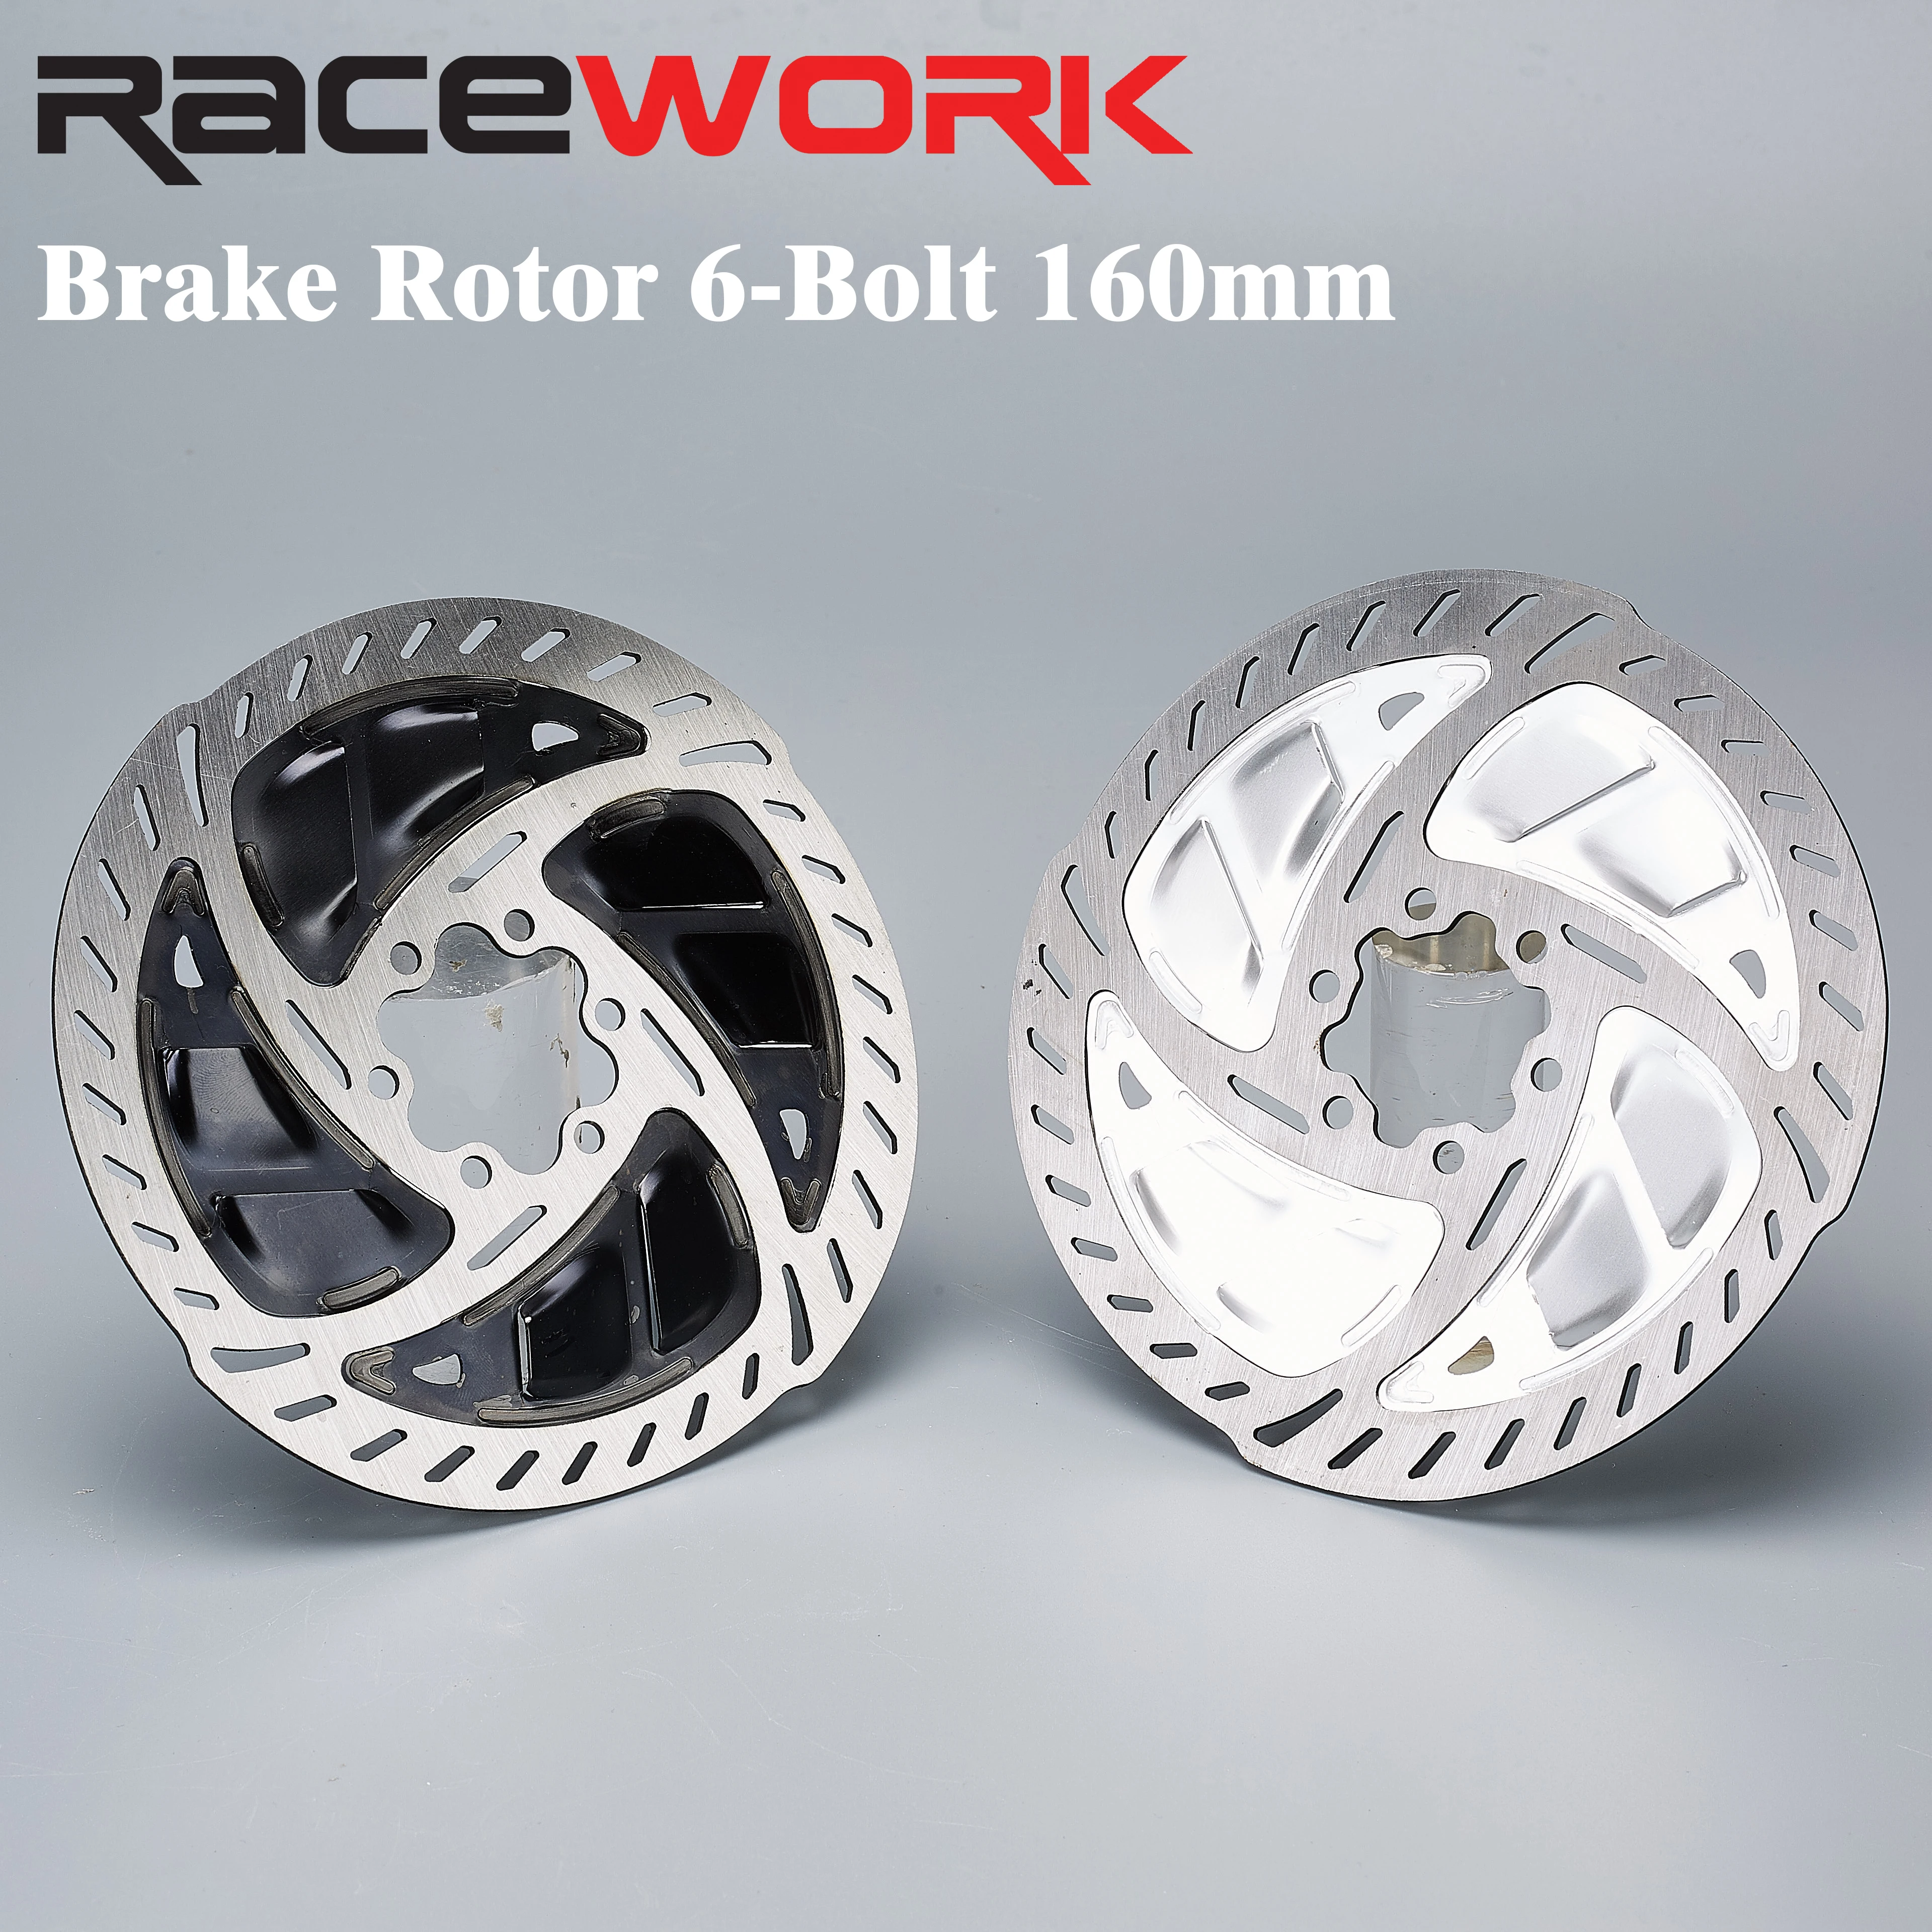 

Дисковый тормозной ротор RACEWORK MTB, высокое качество, дисковый тормоз для горного и дорожного велосипеда 140/160 мм, 6 болтов, теплоотвод, велосипедный ротор